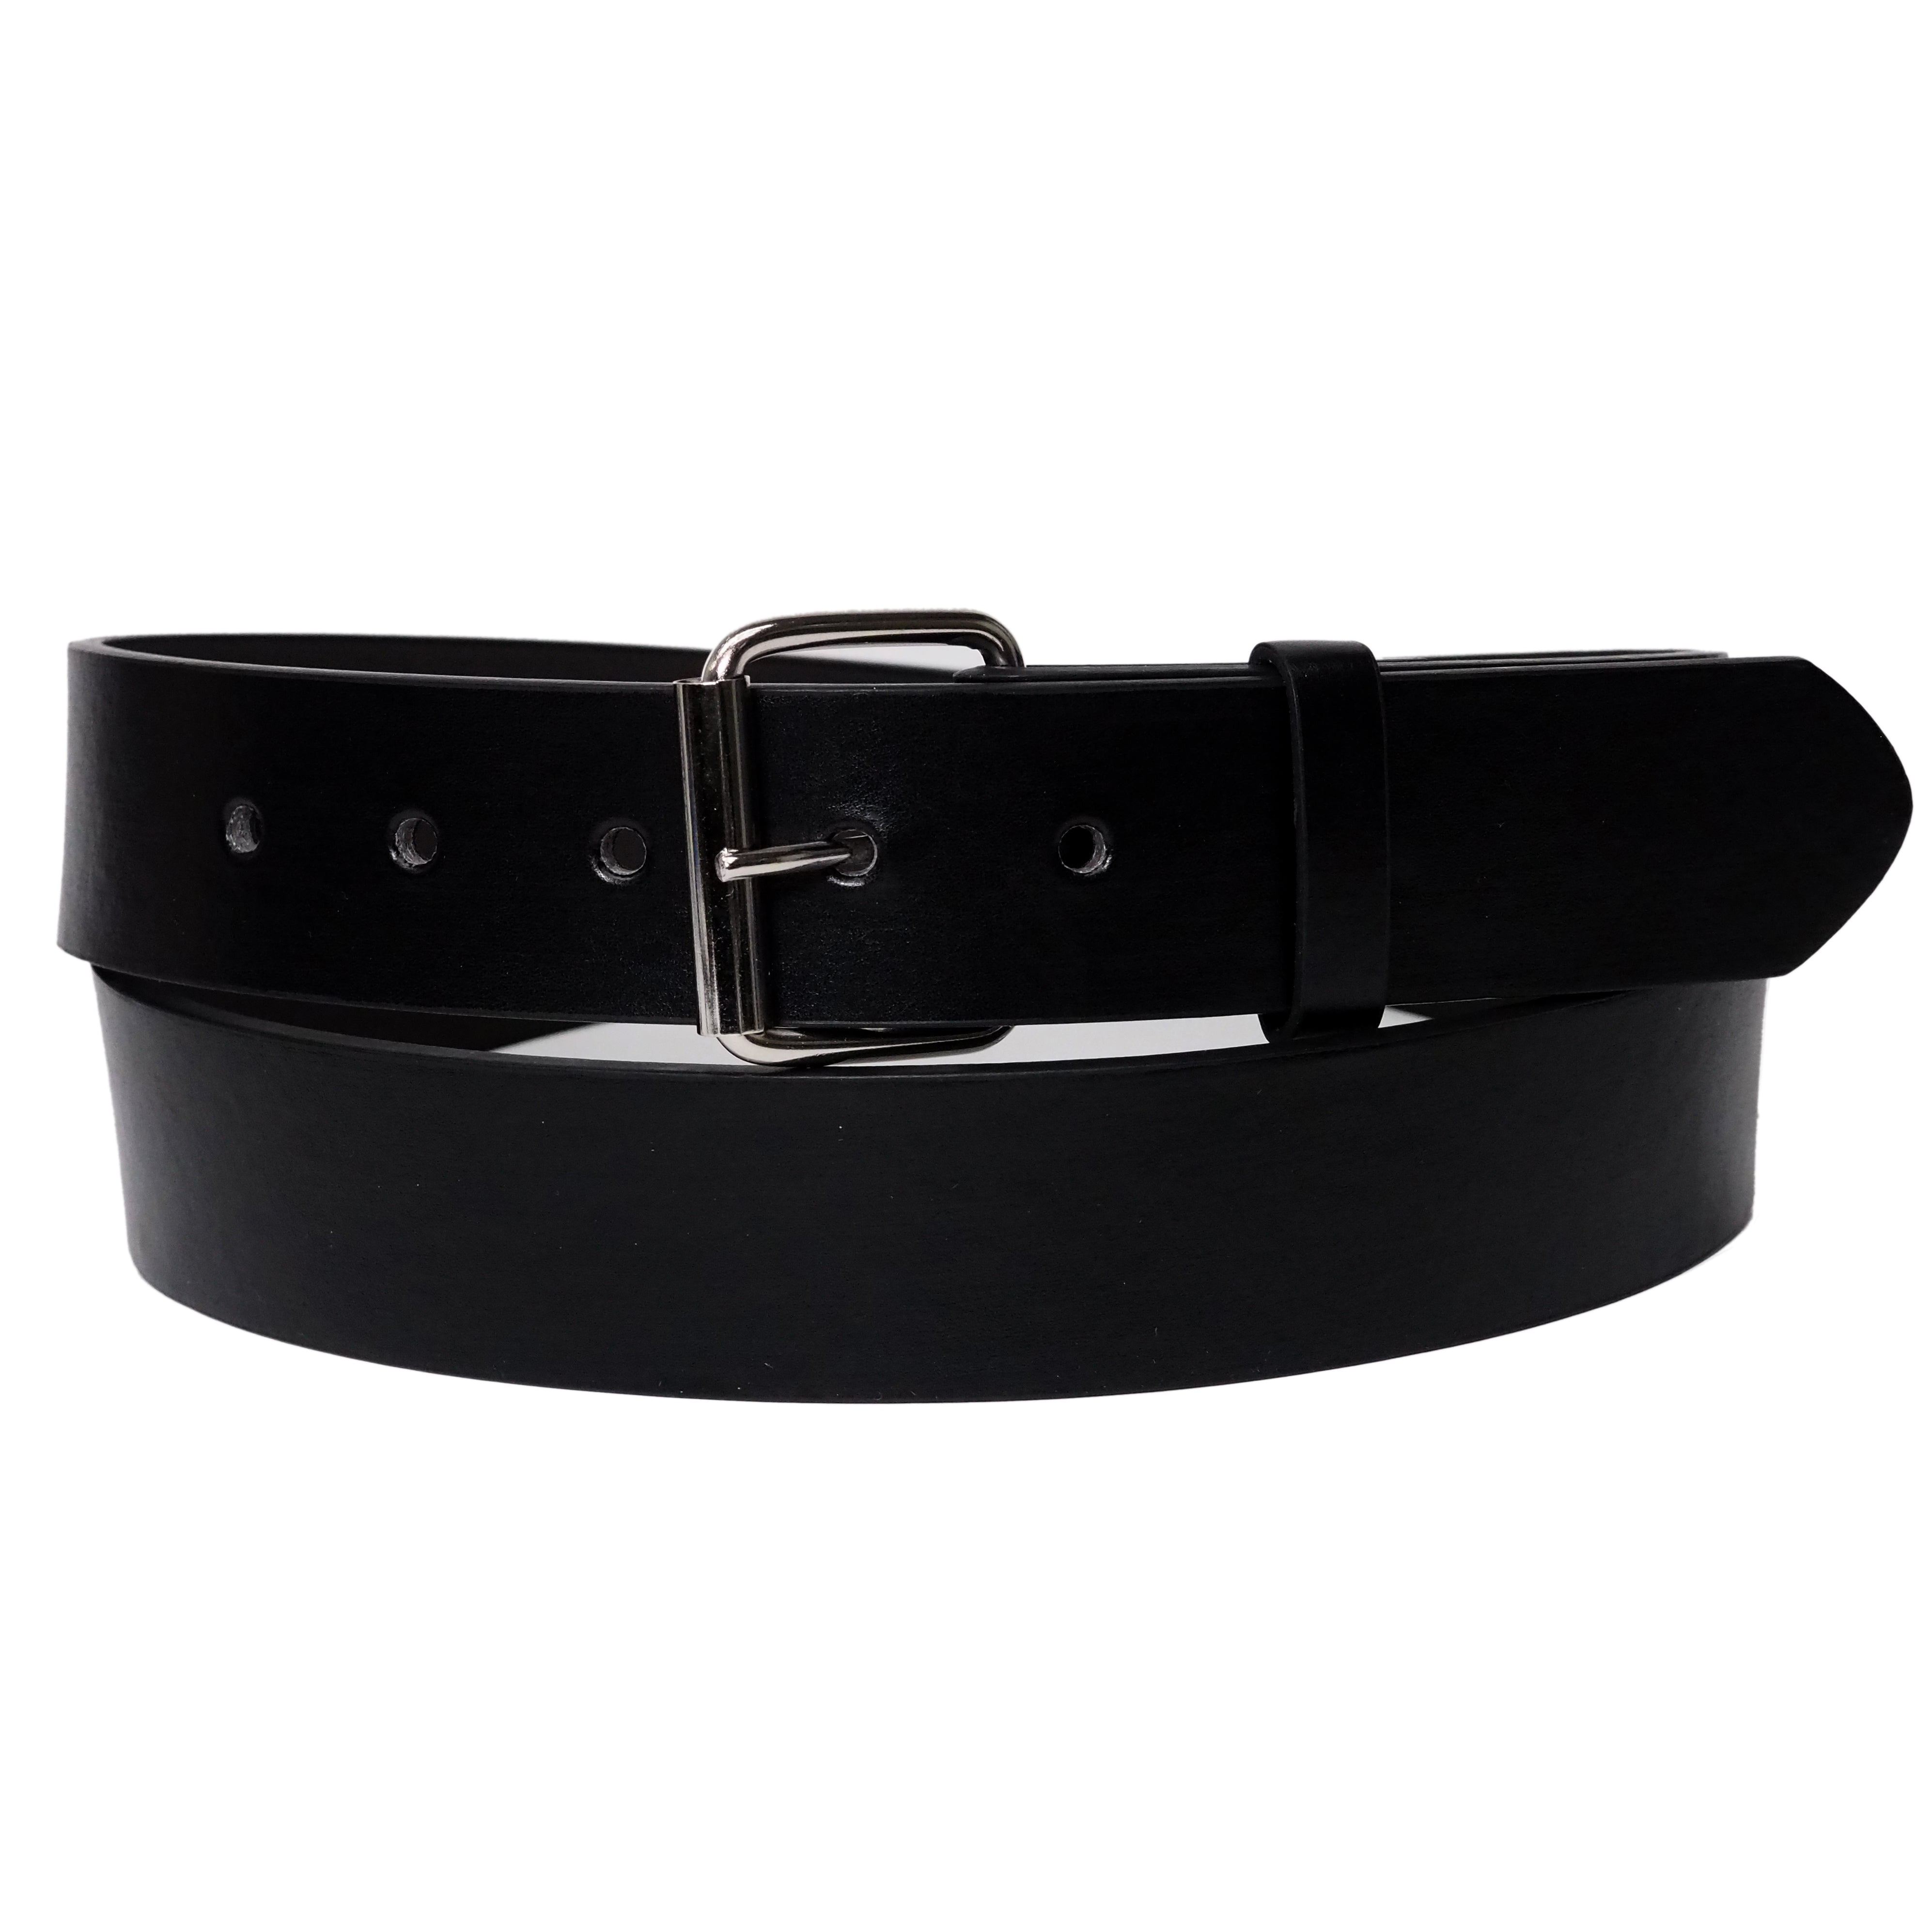 Black Bonded Leather Belt with Removable Belt Buckle - Walmart.com